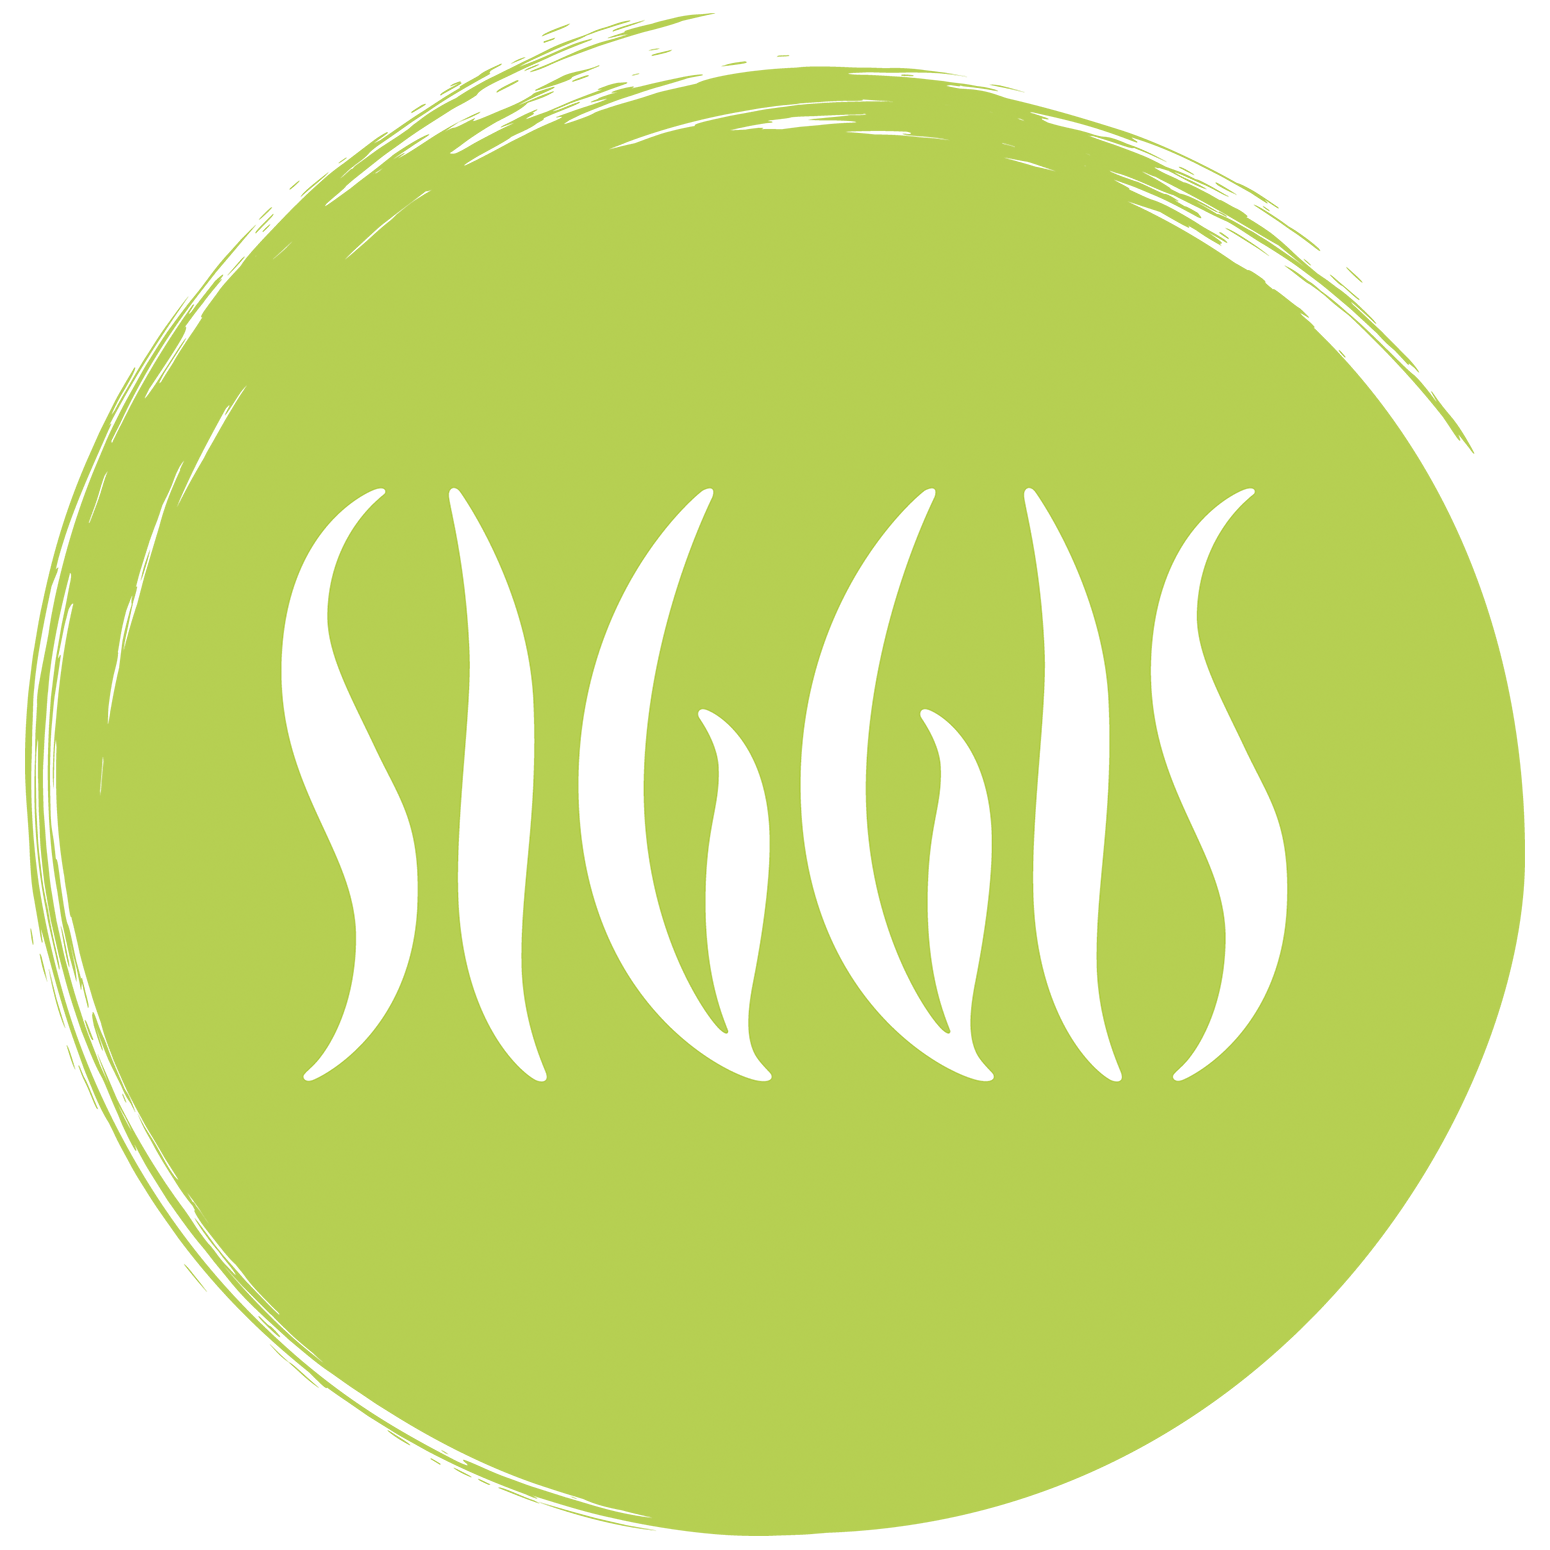 SIGGIS_Logo_final_1550x1550px